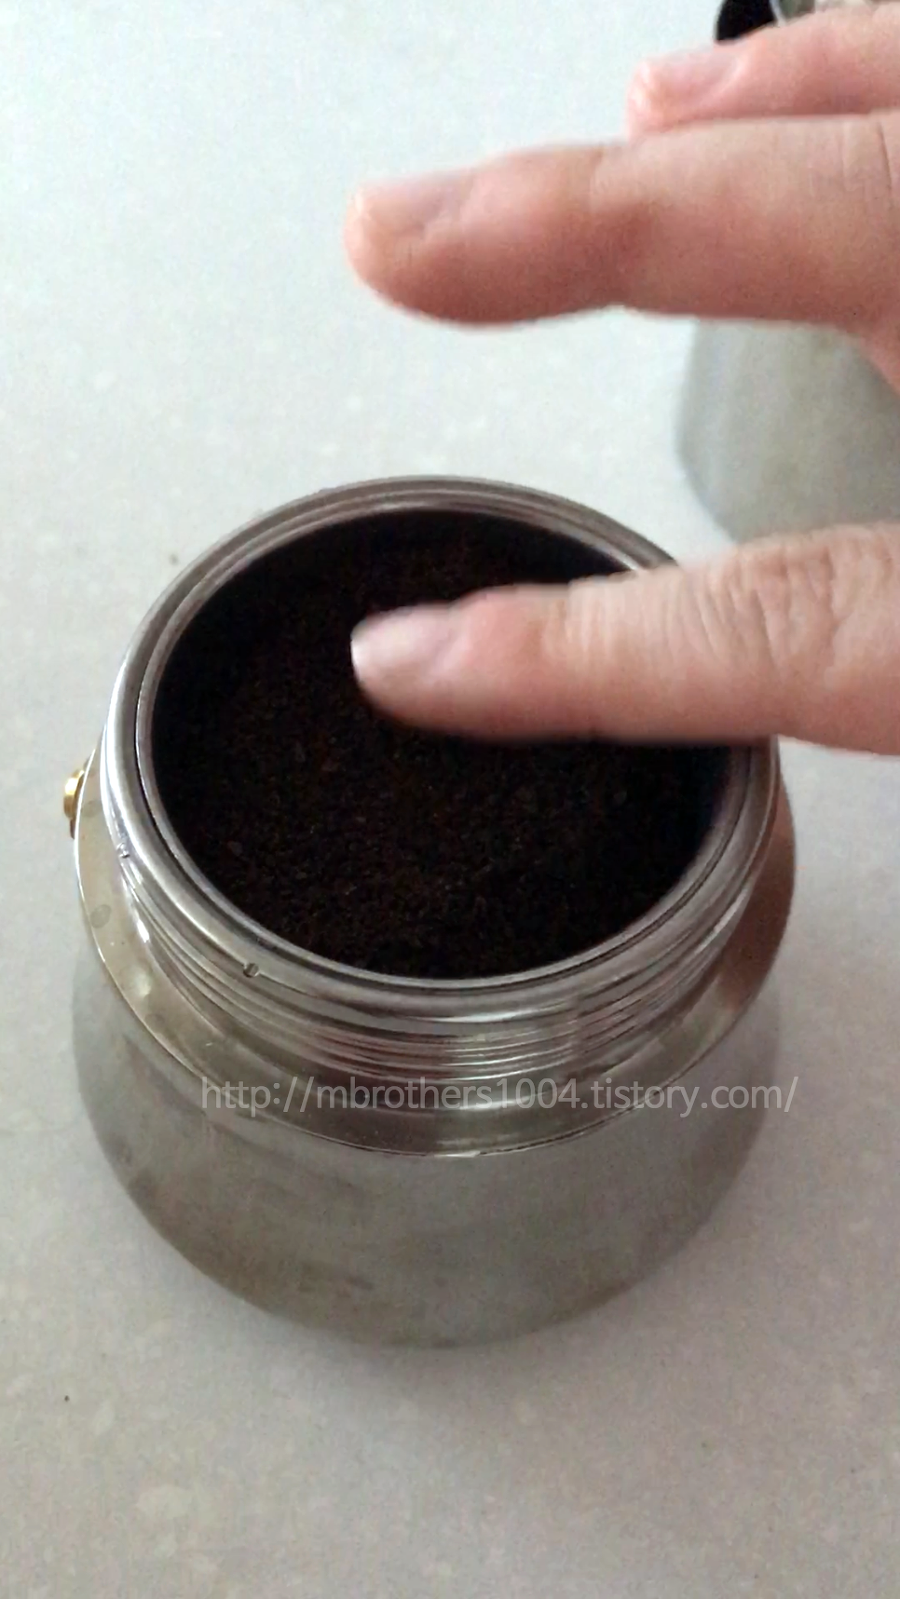 이케아 모카포트, 스테인리스 모카포트사용하는방법, ikea mokaport, how to use ikea mokaport, 고디바 초콜릿 트러플 그라운드 아라비카 커피 맛있게 먹는 방법1, How to enjoy Godiva Chocolate Trufful Ground Arabica Coffee